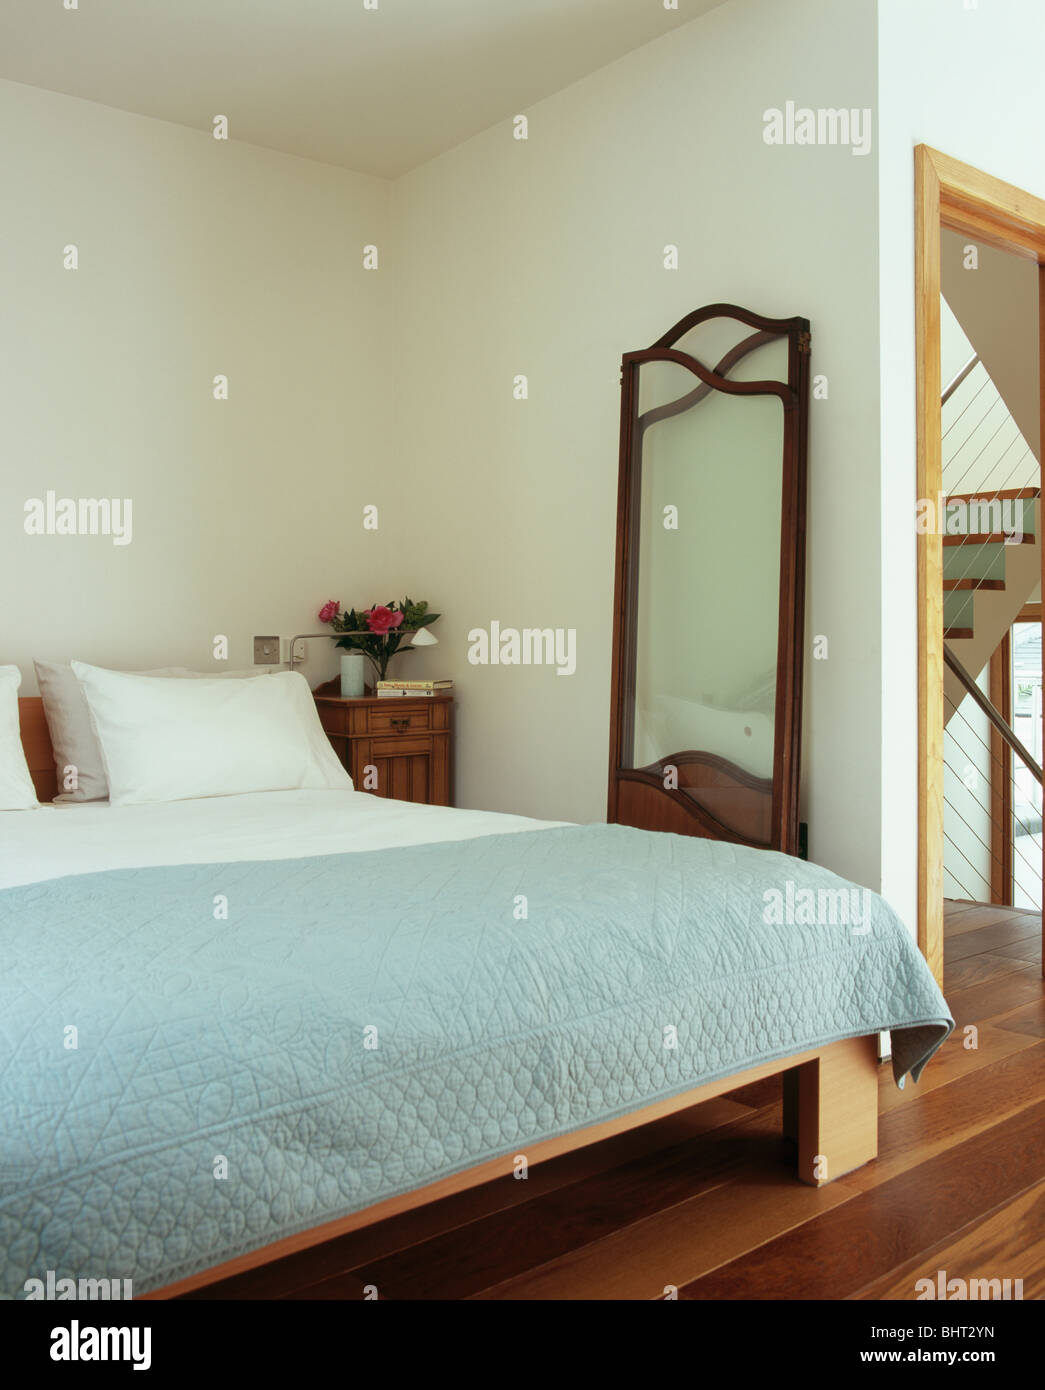 Lange Spiegel neben Bett mit Pastell blau Steppdecke und Kissen in modernen  Stadthaus Schlafzimmer Wand gelehnt Stockfotografie - Alamy